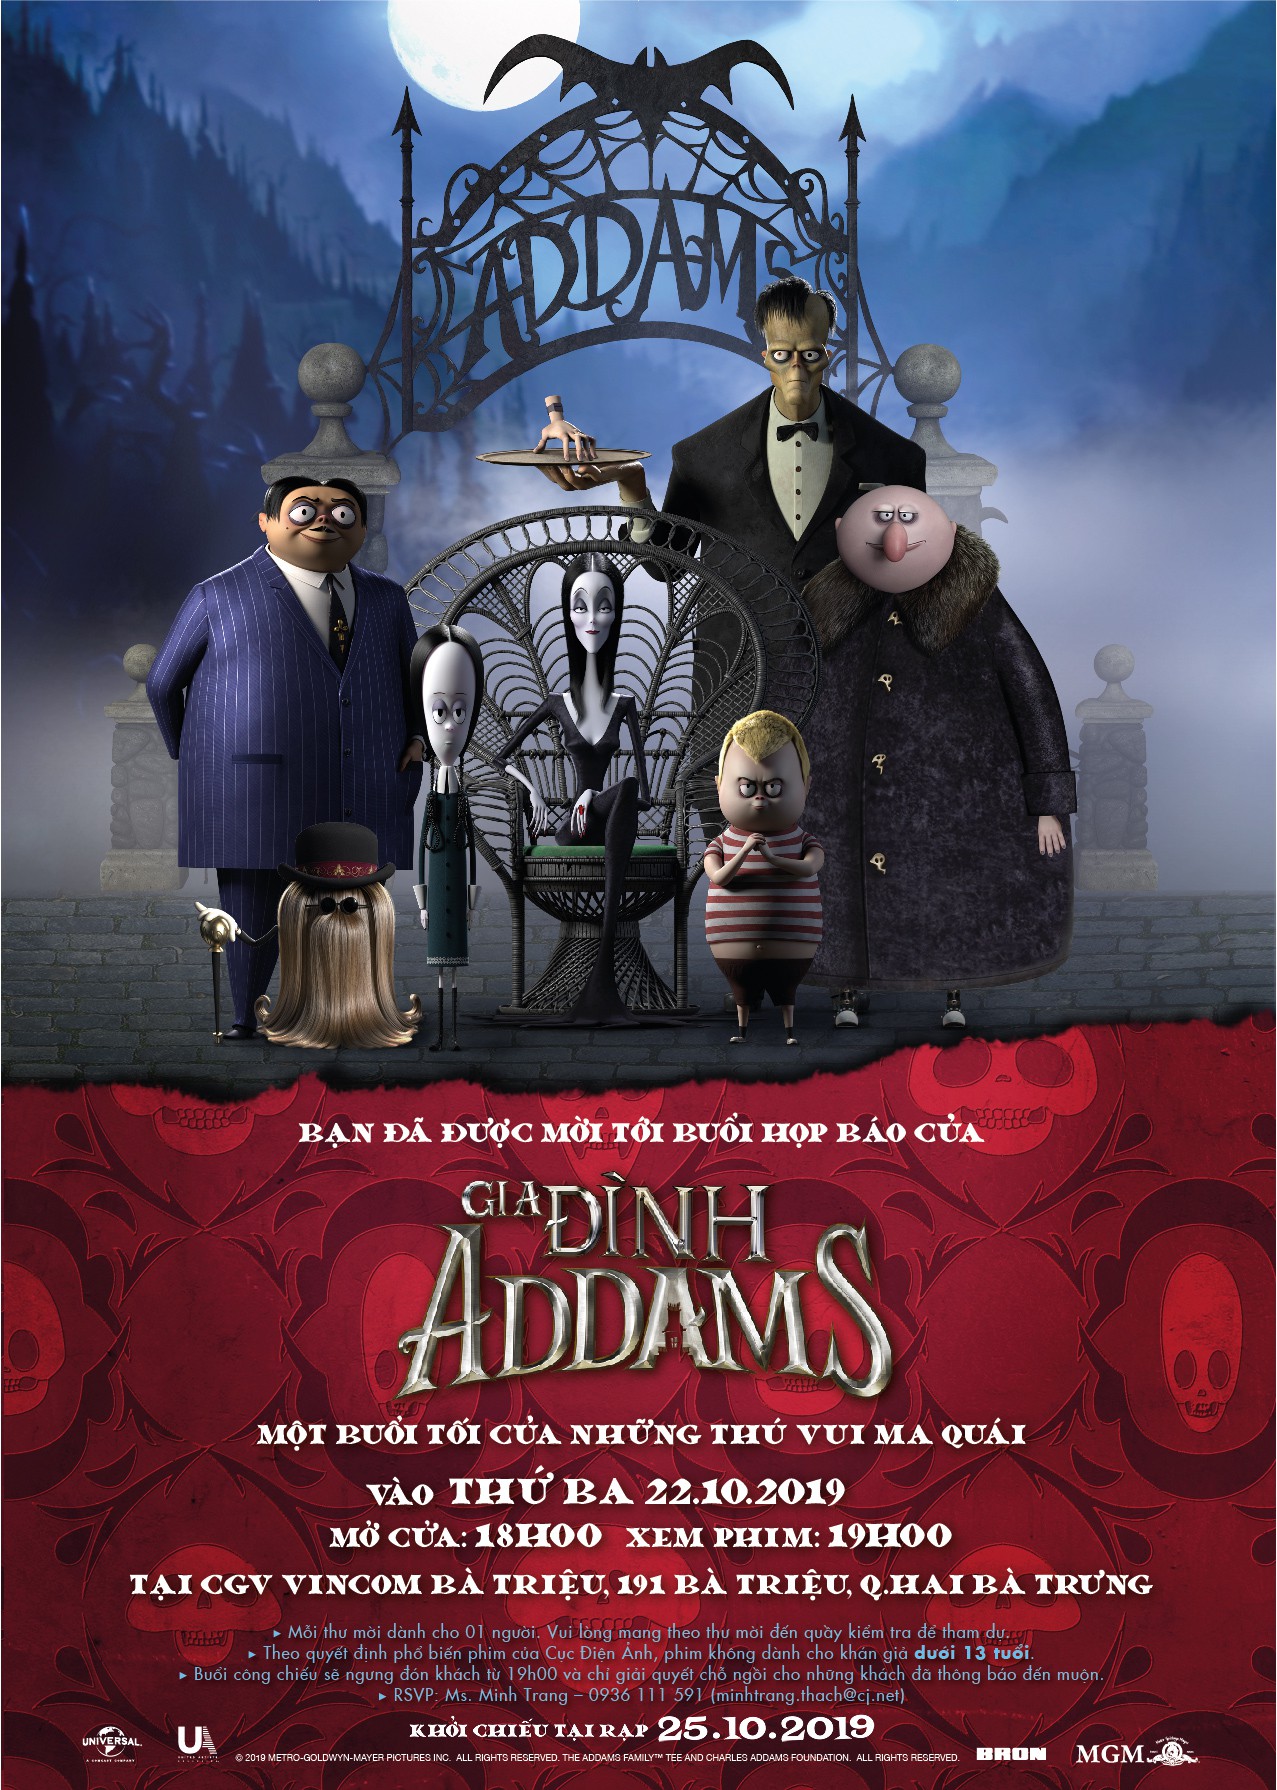 Gia đình Addams: Chào mừng đến với thế giới của Gia đình Addams! Đây là một gia đình đặc biệt với những thói quen khác thường và phong cách sống thú vị. Hãy cùng khám phá hành trình của họ đến với trái đất và thấy một gia đình bất đắc dĩ trở thành biểu tượng cho sự khác biệt và cái đẹp trong sự đa dạng.